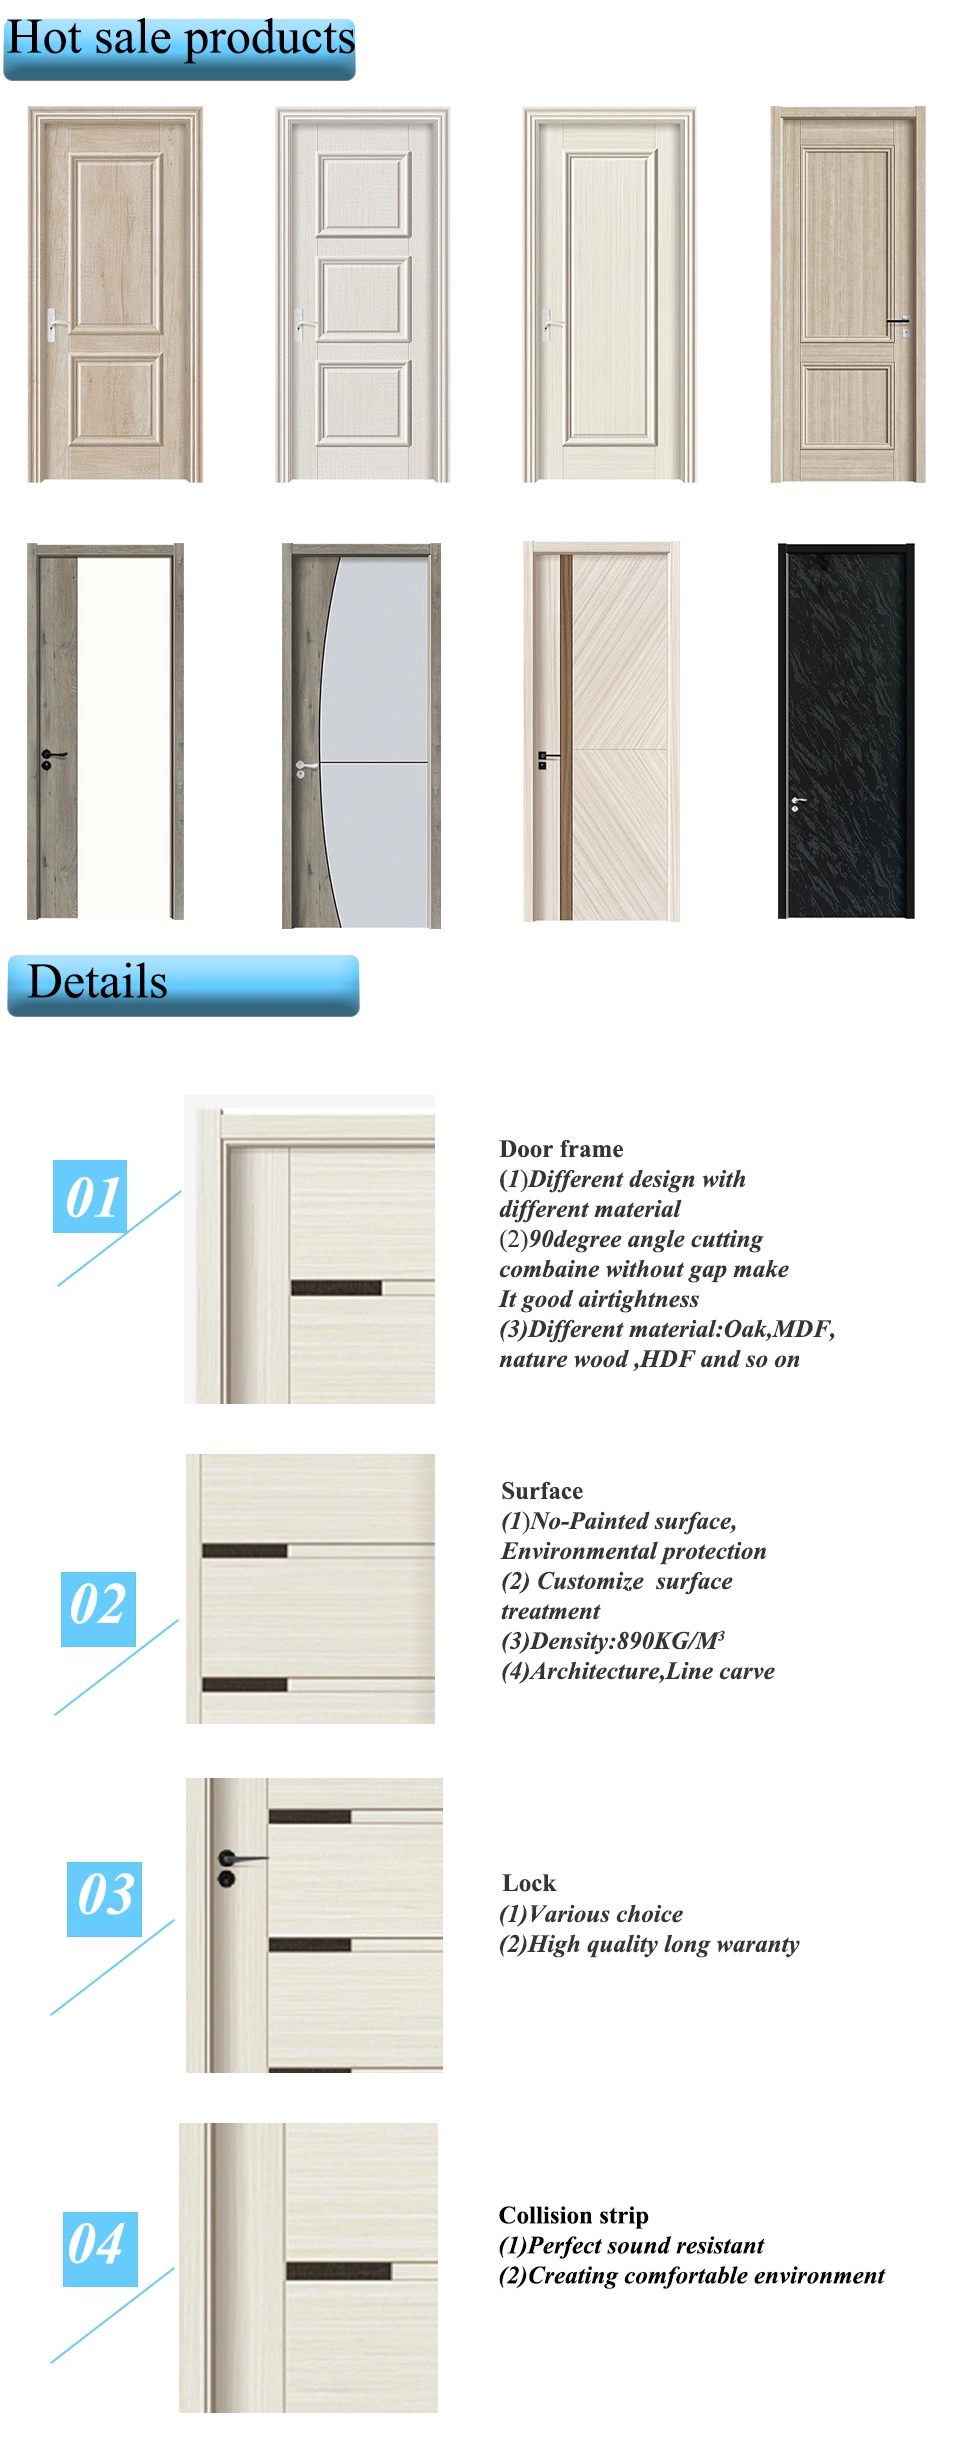 Cheap Wooden Internal Door Design Doors Interior with Frame for Bedroom Apartment 6 Panel Villa Main Entrance Door